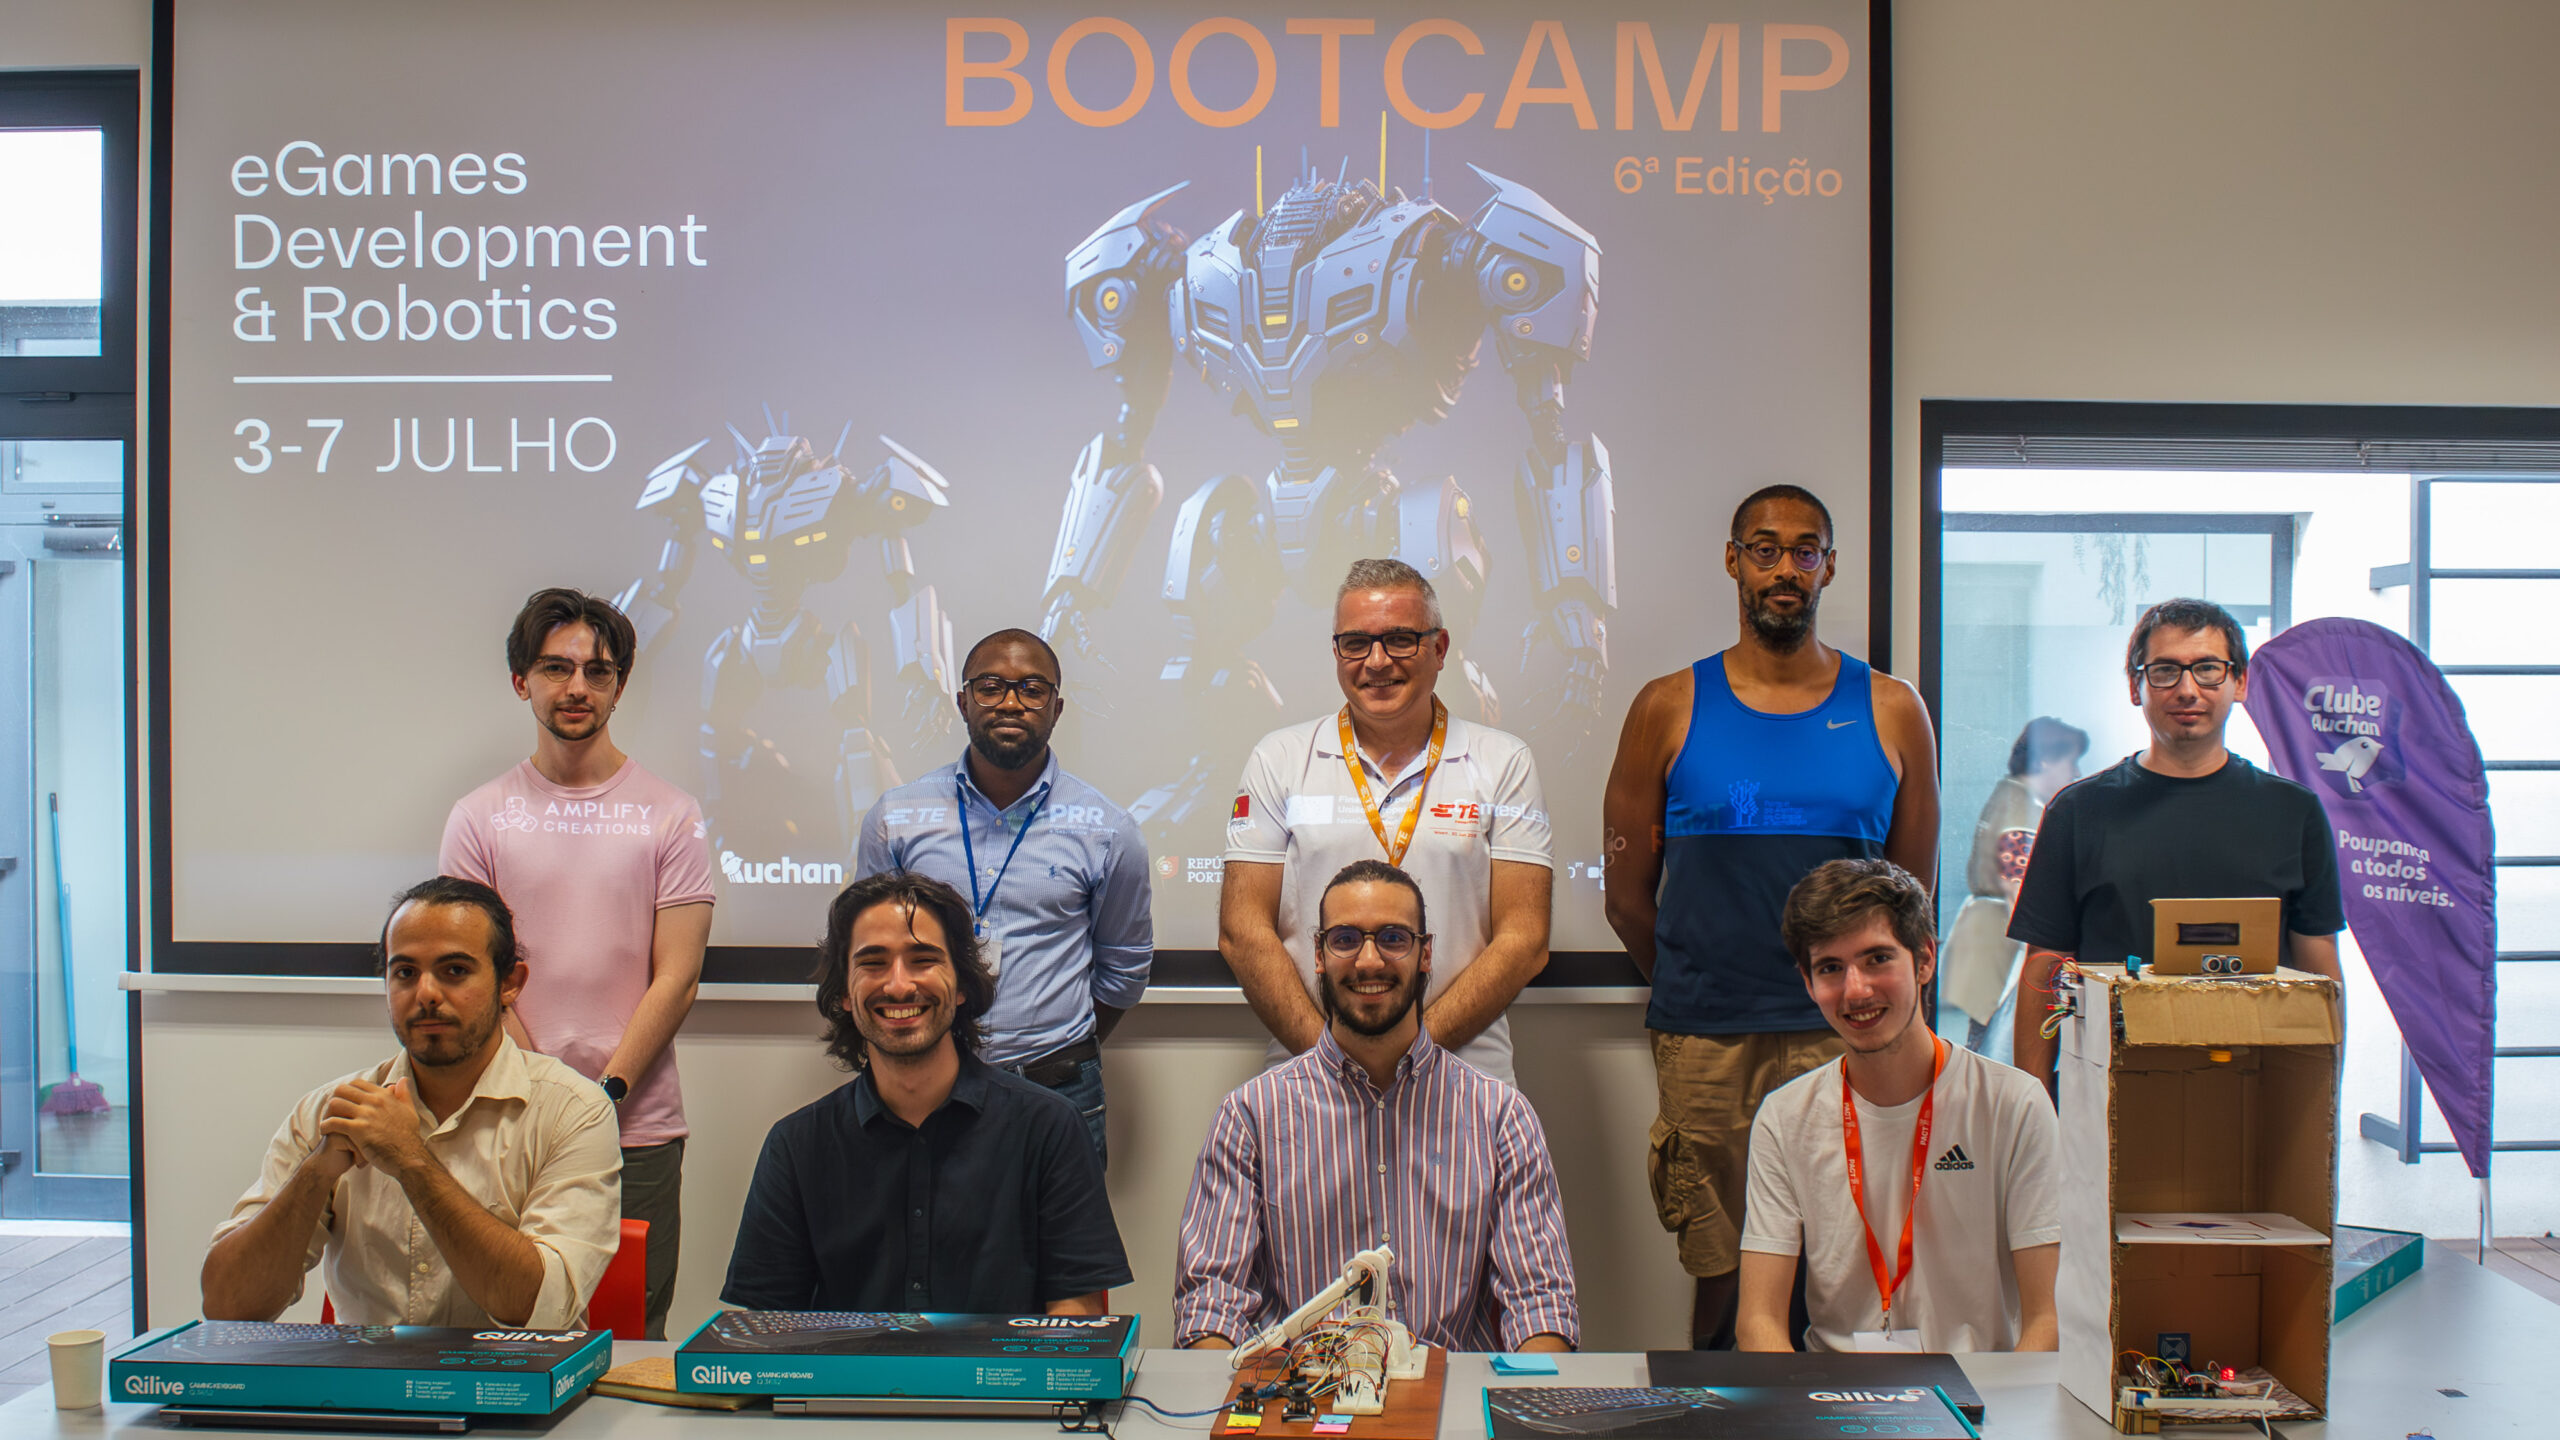 6ª edição do Bootcamp de desenvolvimento de eGames e robótica termina com  sucesso